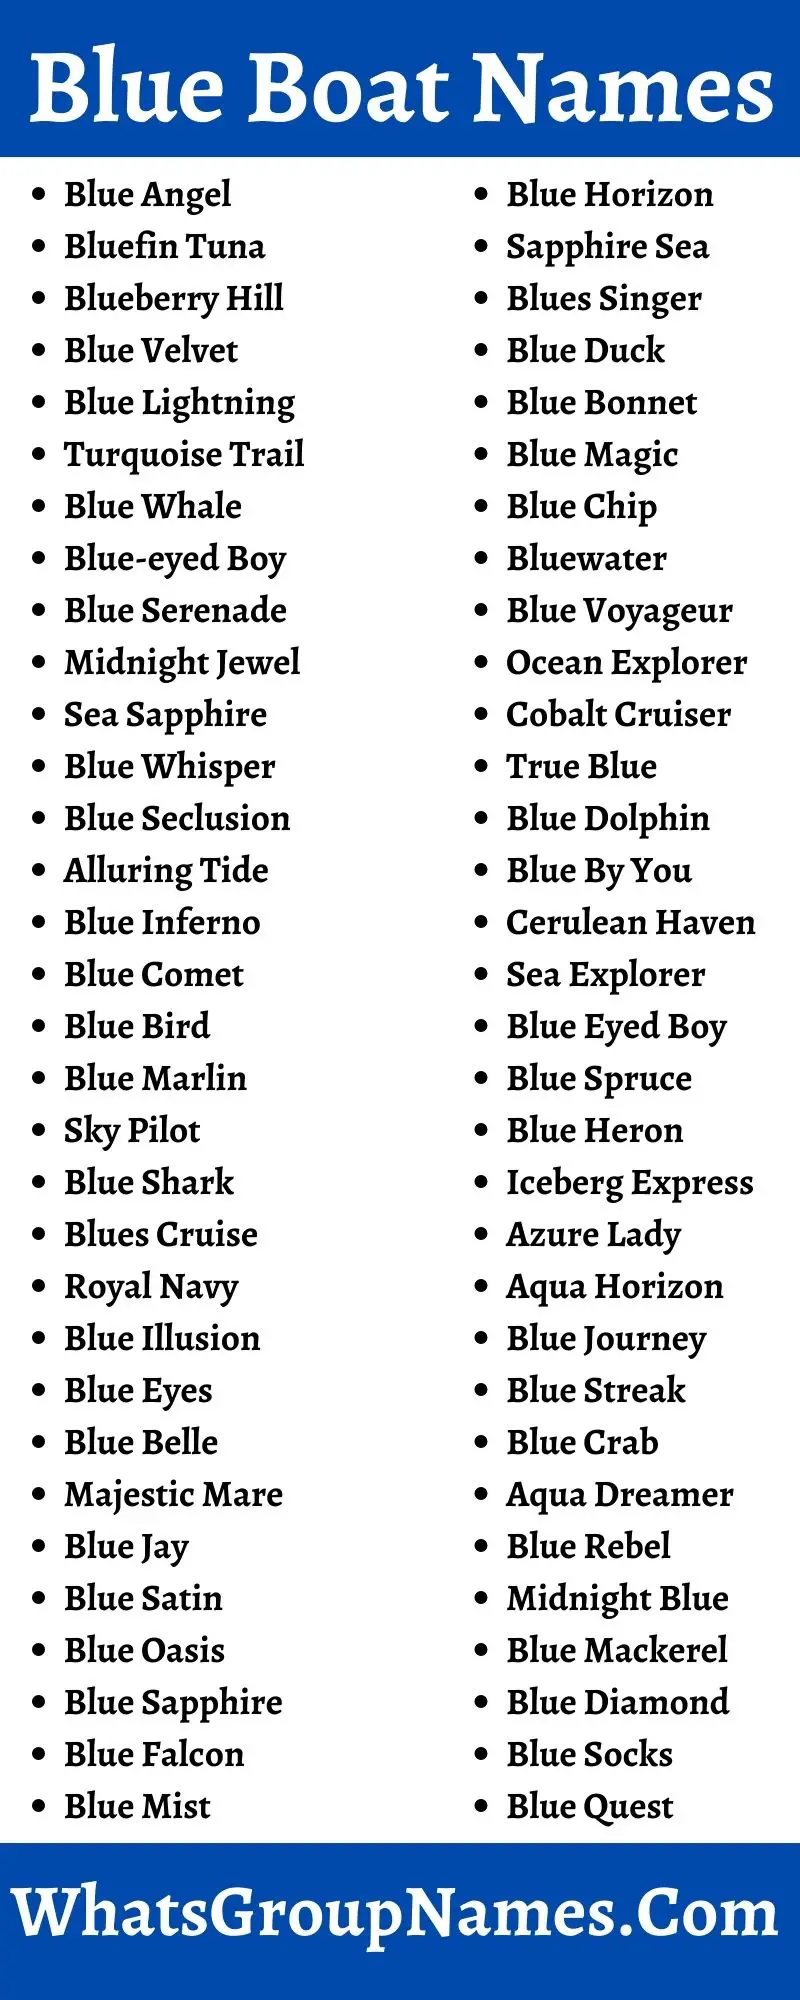 Blue Boat Names